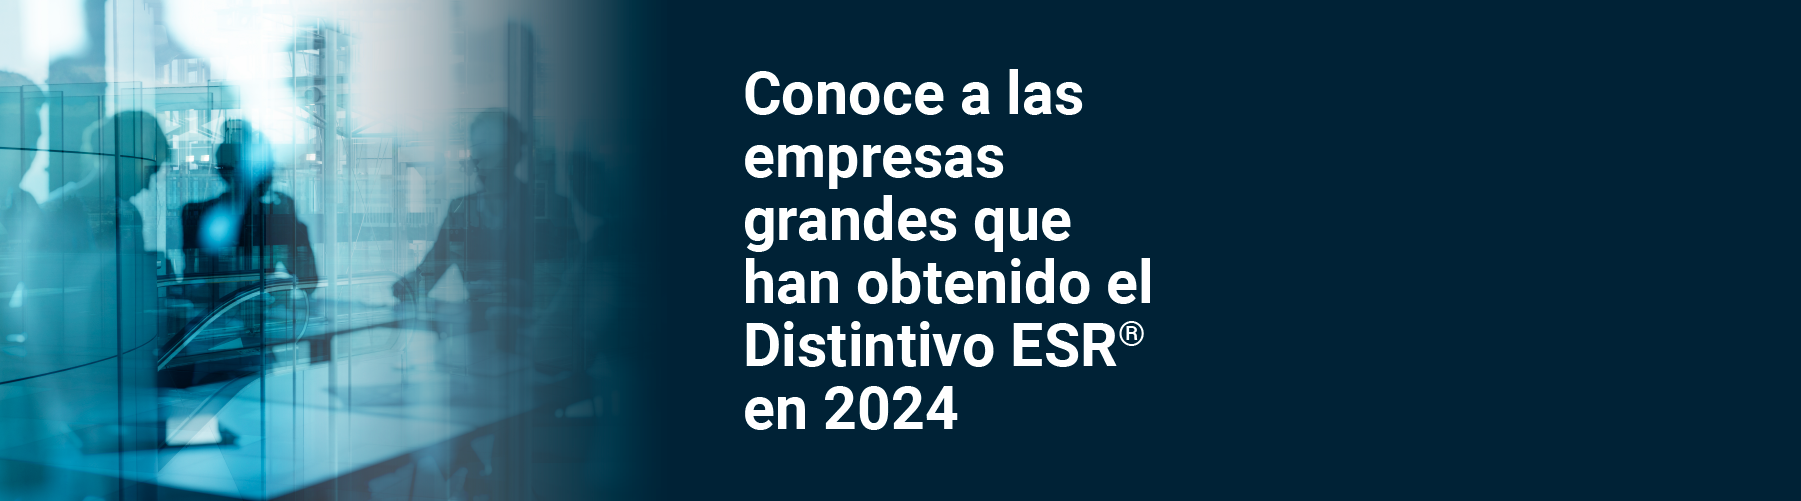 🙌 Empresas grandes que cumplieron con los estándares para obtener el Distintivo ESR® en 2024. Felicidades 👏